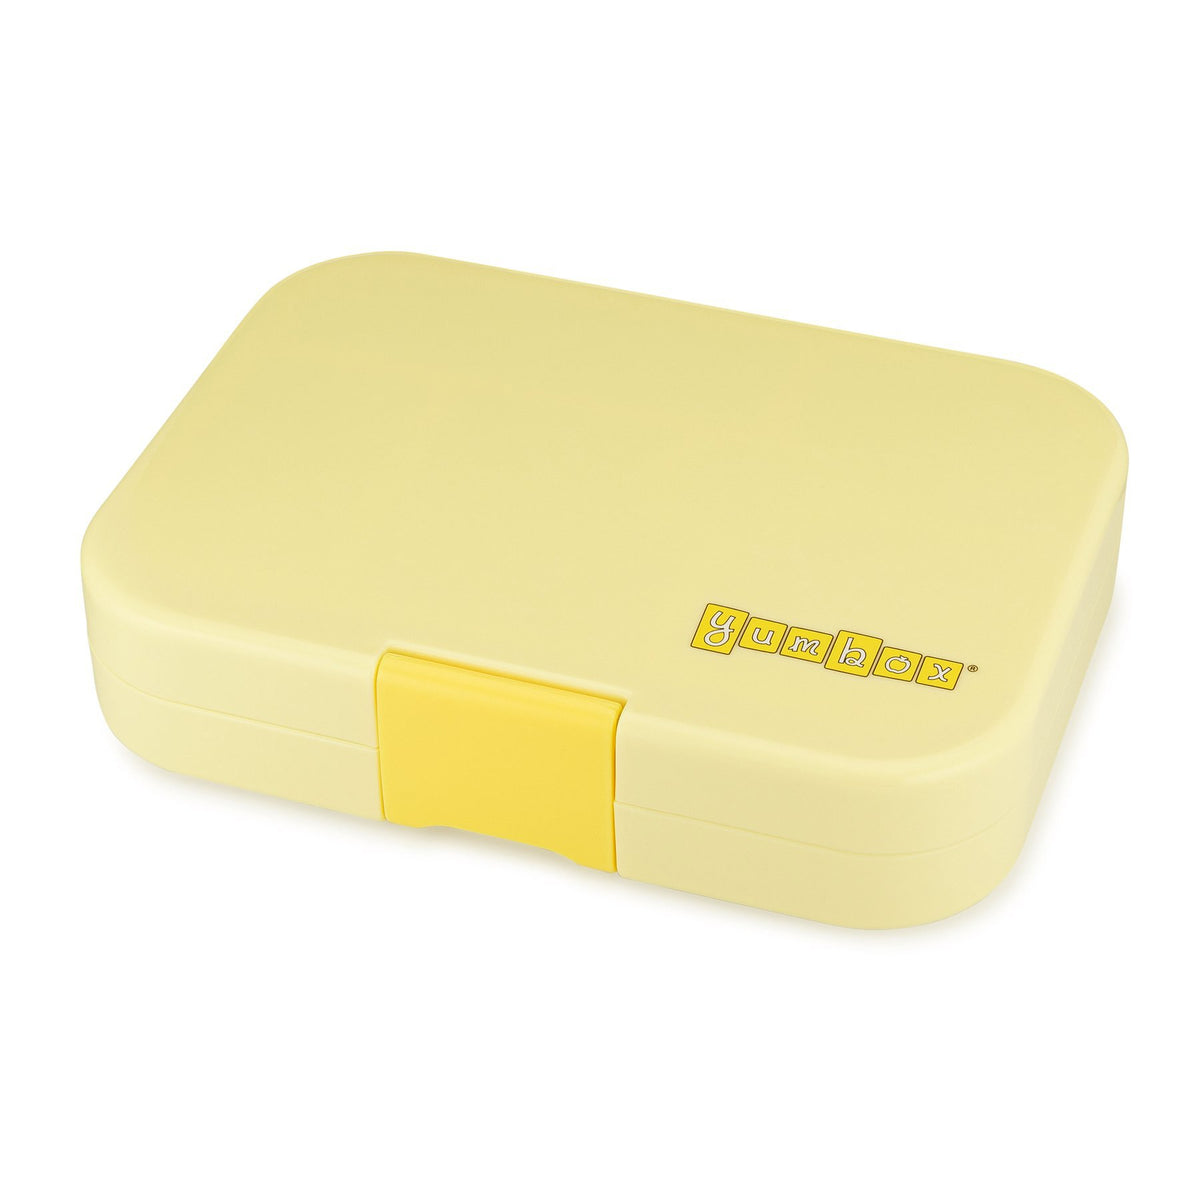 yumbox-original-sunburst-yellow-6-compartment-lunch-box- (3)